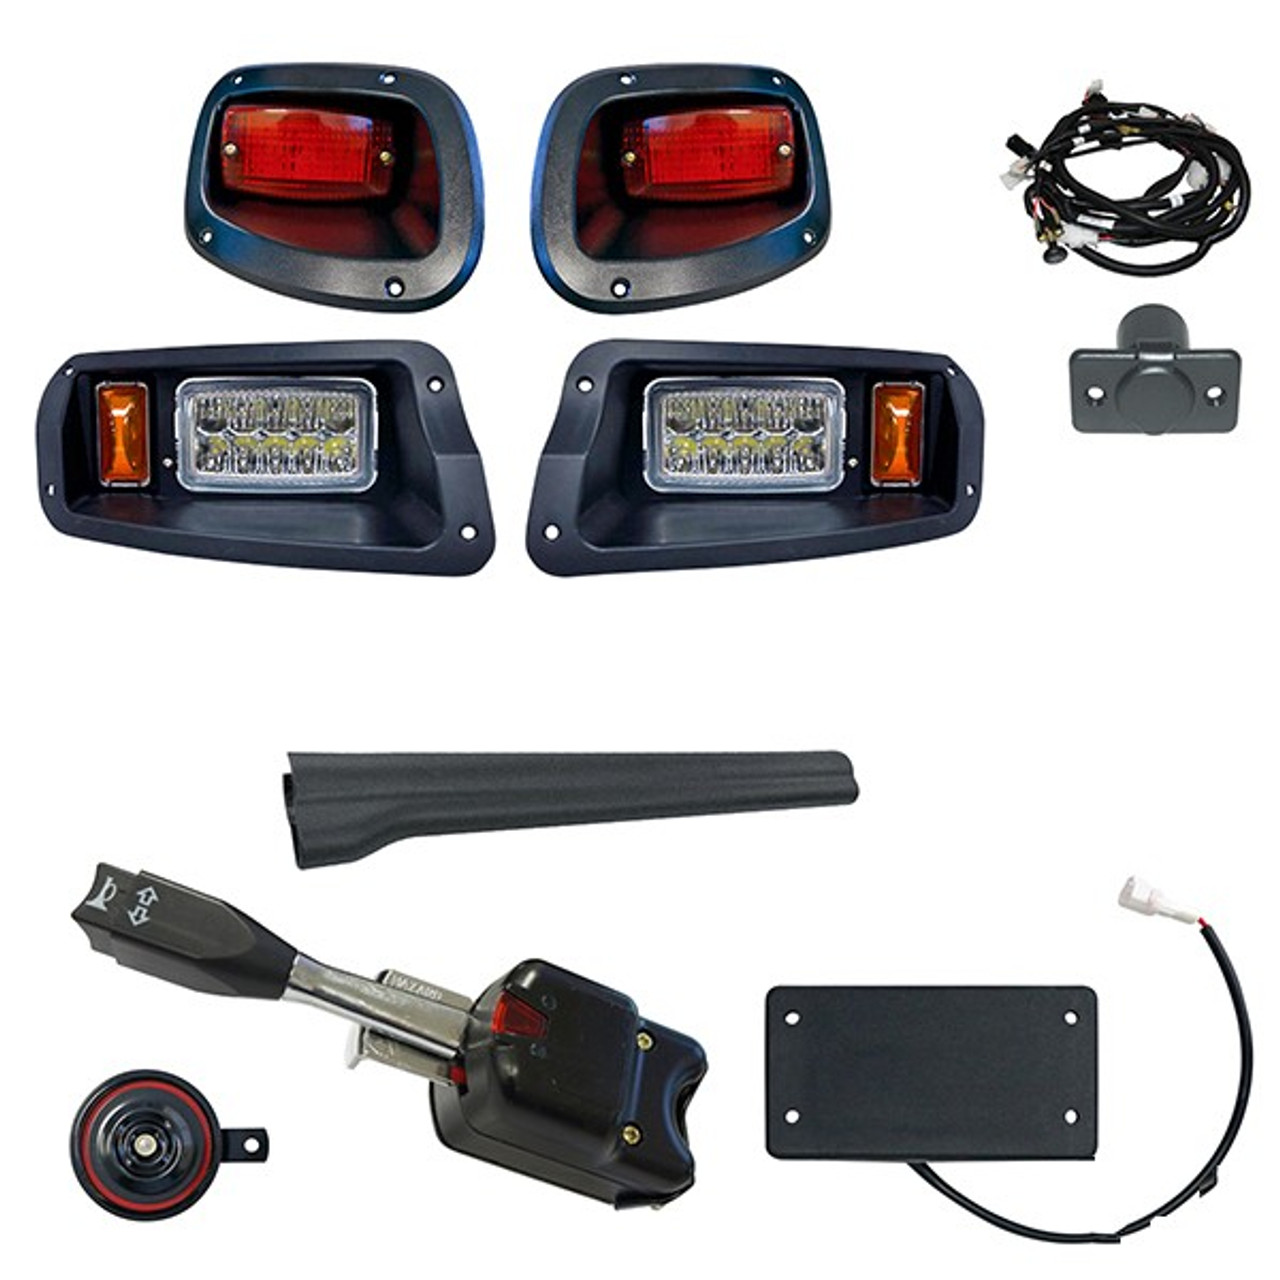 Standard LED Adjustable Light Kit, E-Z-Go TXT 2014-Up Golf Cart (OEM Fit), LGT-301LT2B10